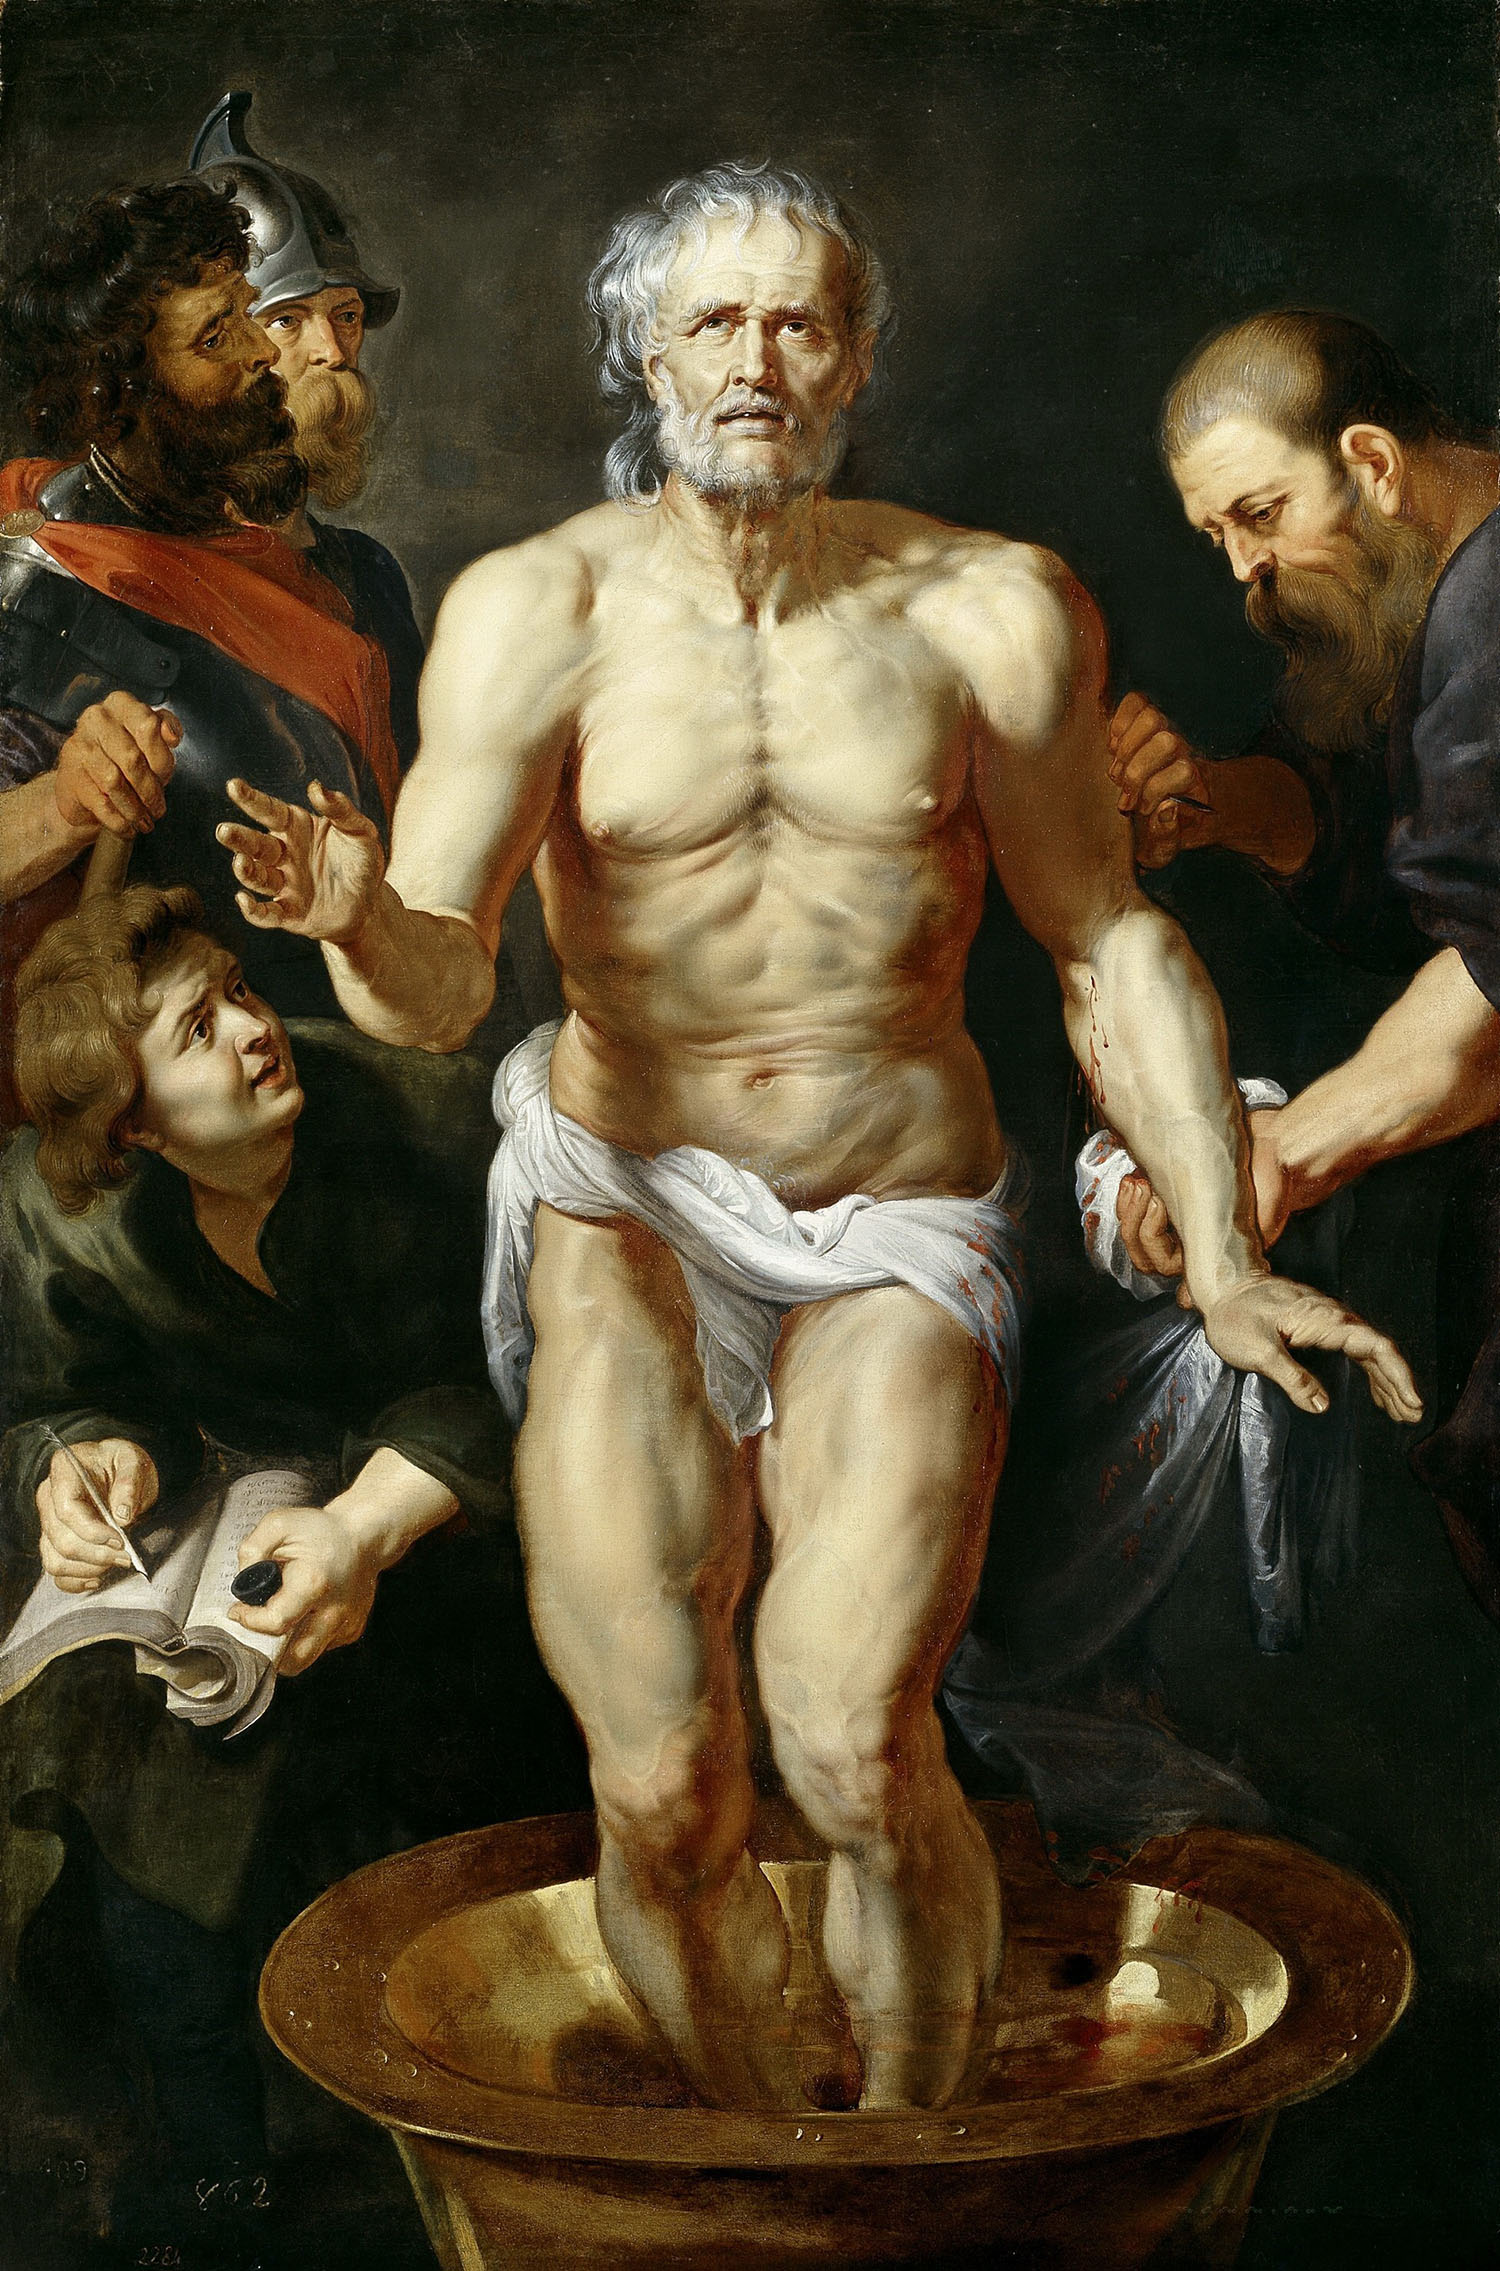 Питер Пауль Рубенс, мастерская. "Смерть Сенеки". 1612-1615. Прадо, Мадрид.